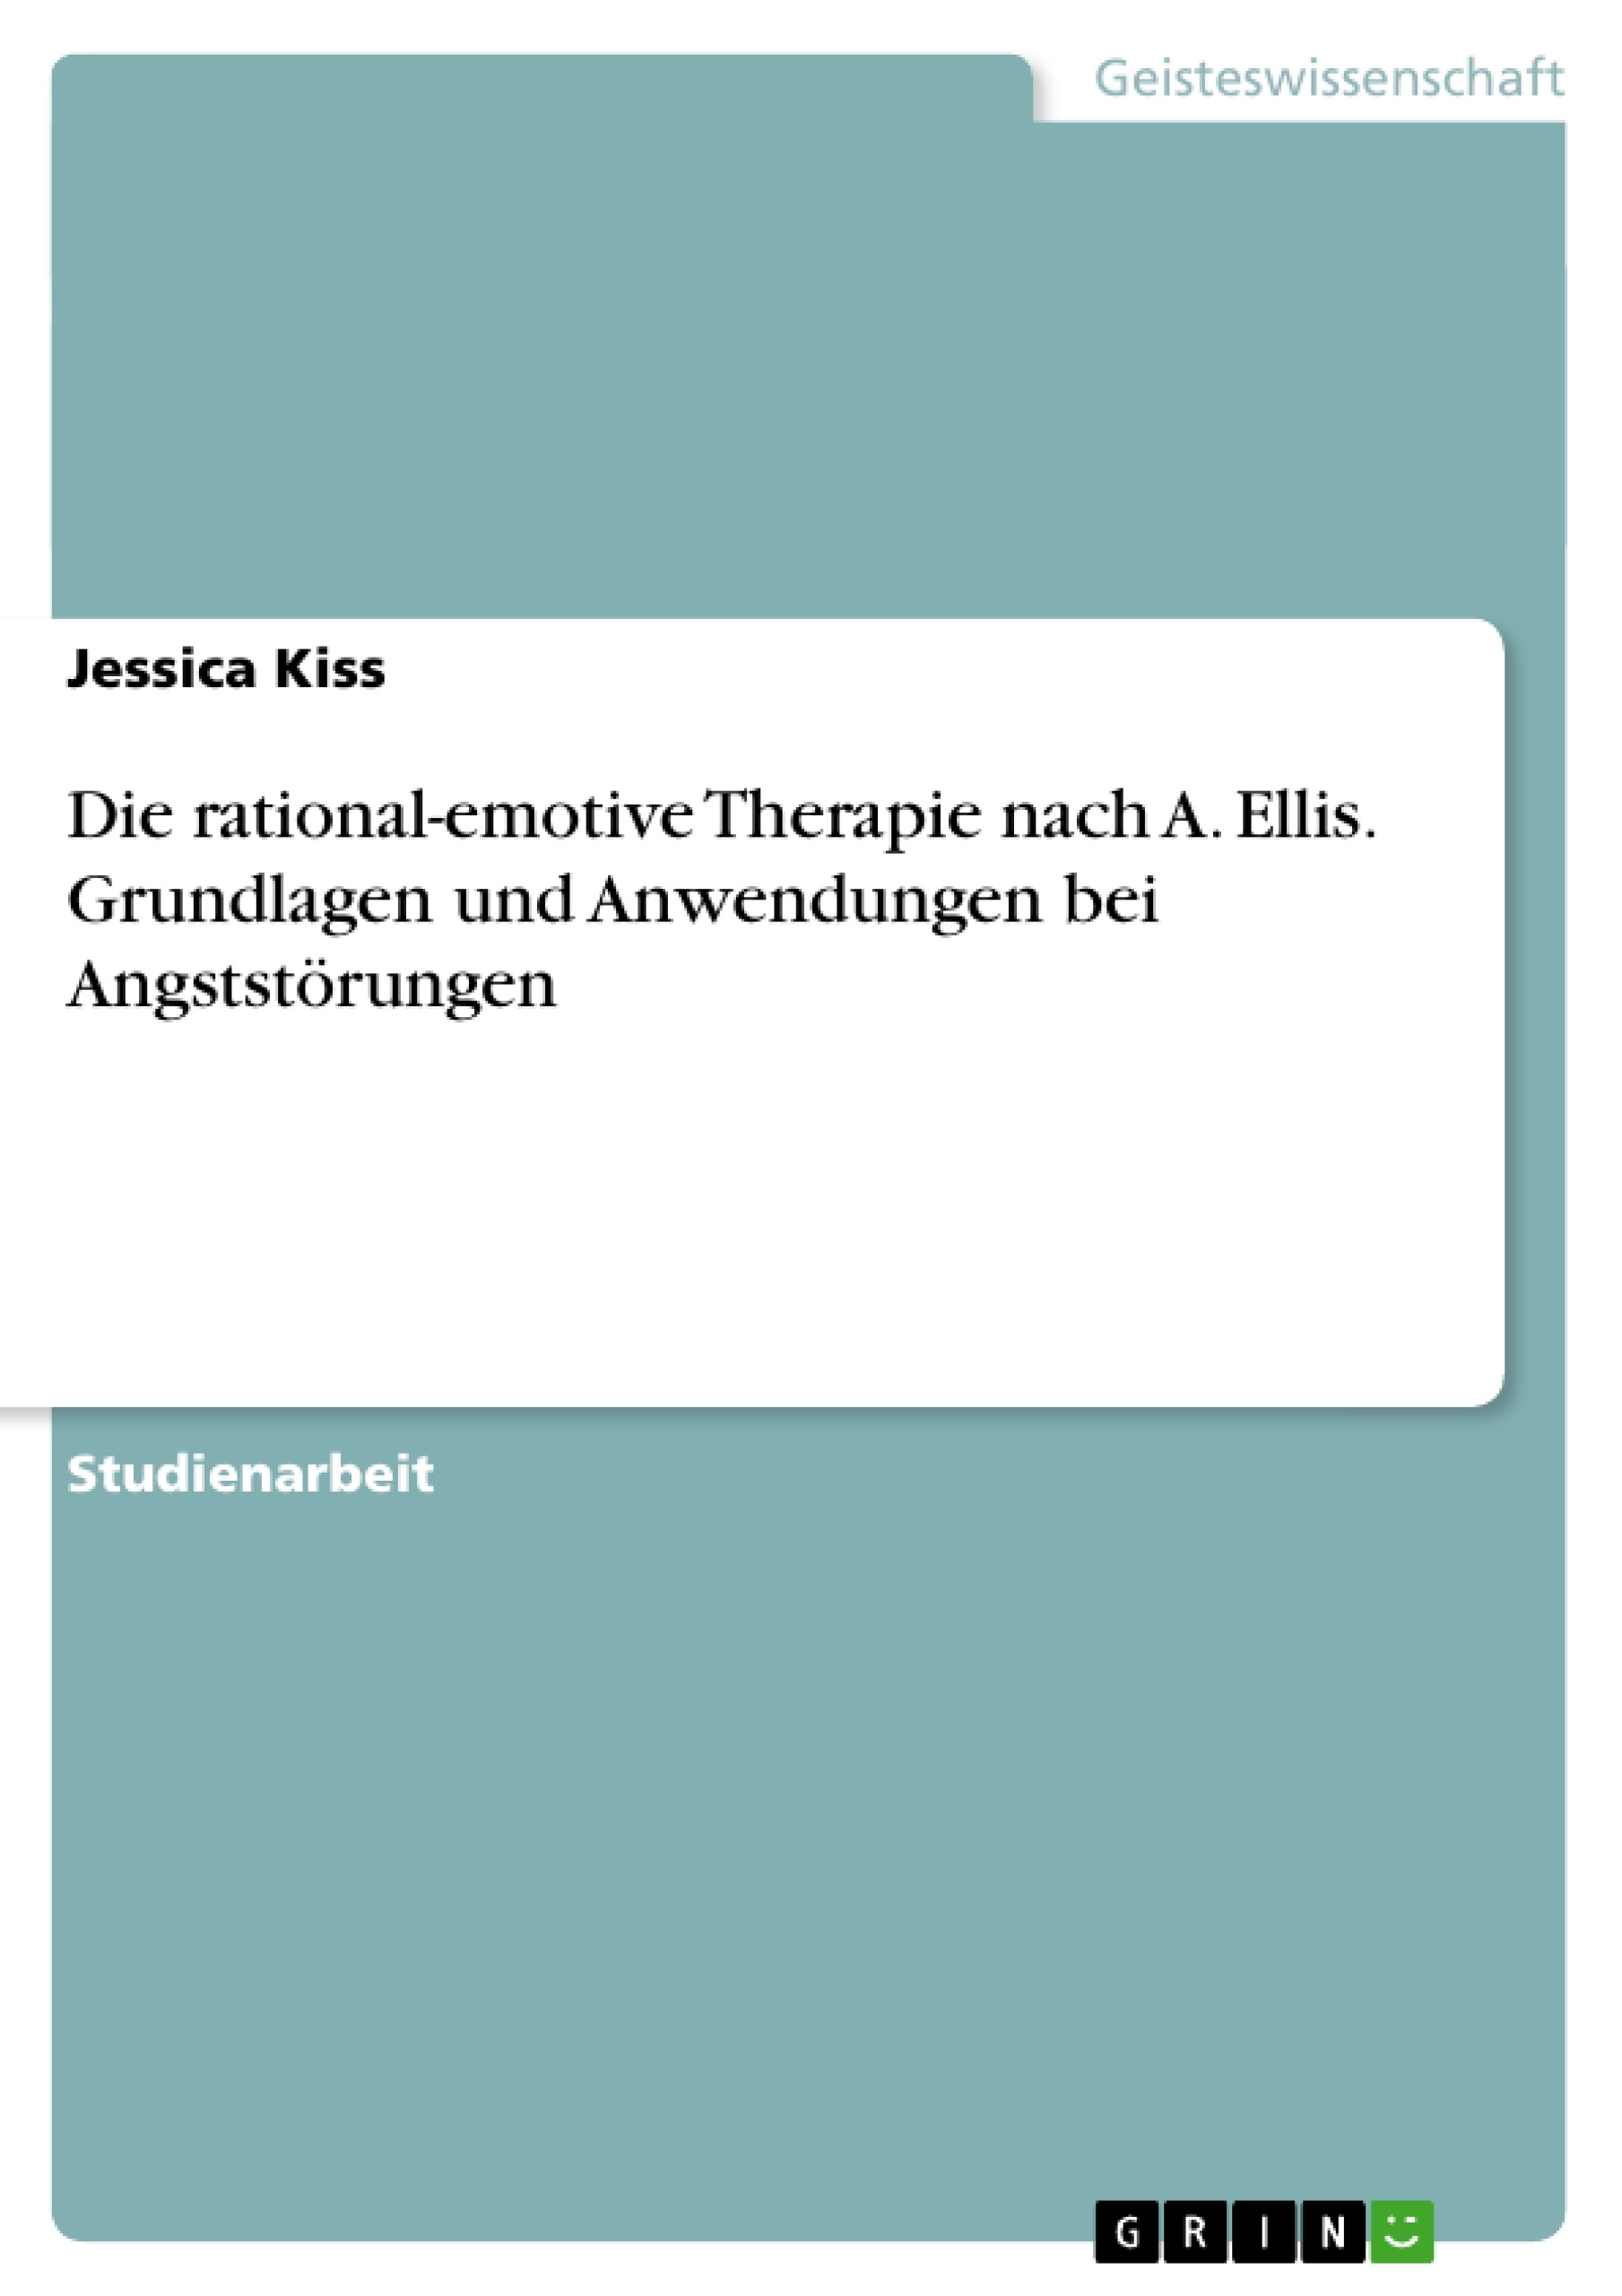 Título: Die rational-emotive Therapie nach A. Ellis. Grundlagen und Anwendungen bei Angststörungen